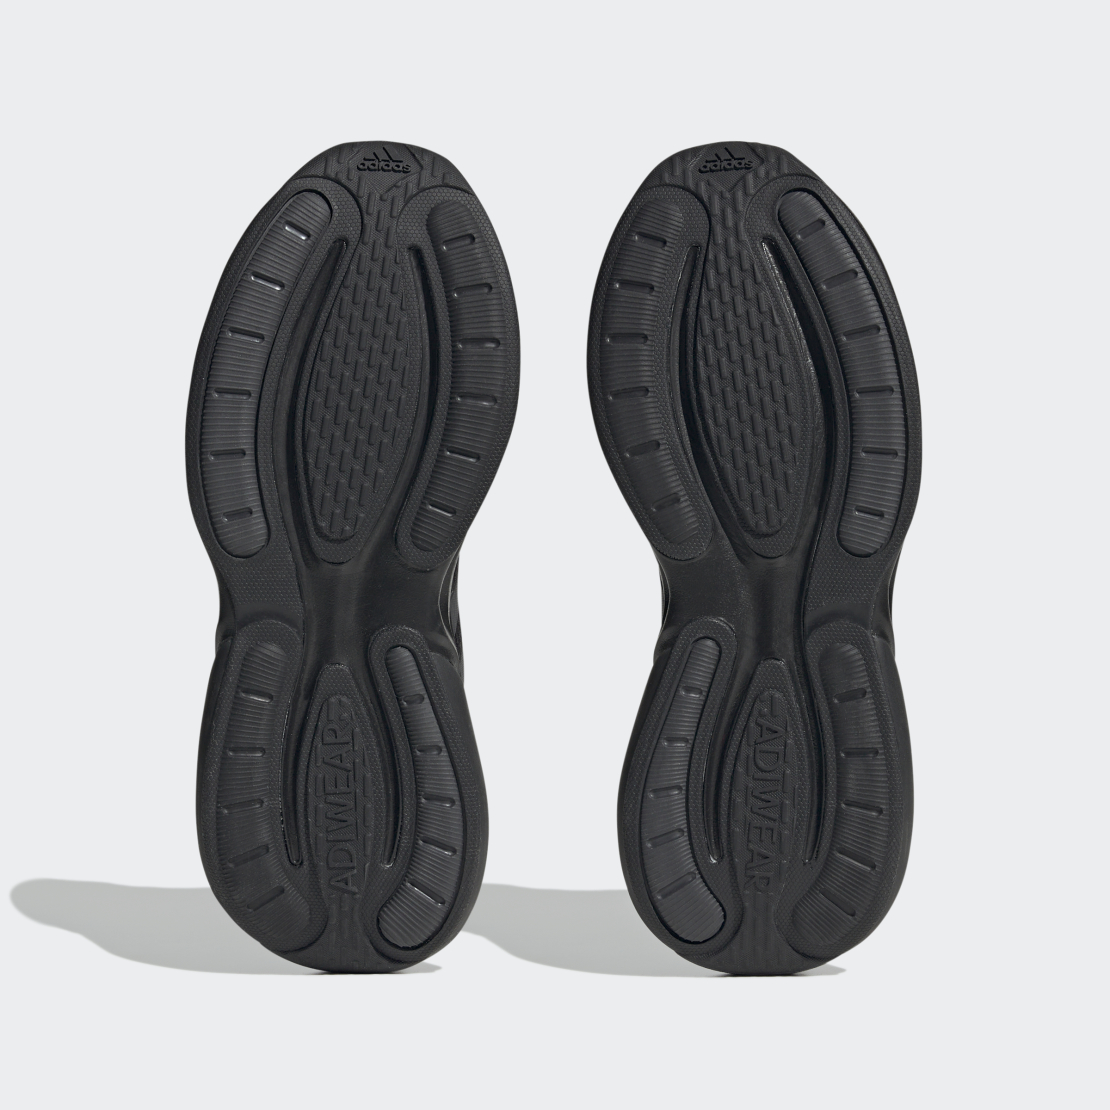 נעלי אדידס | Adidas Alphabounce